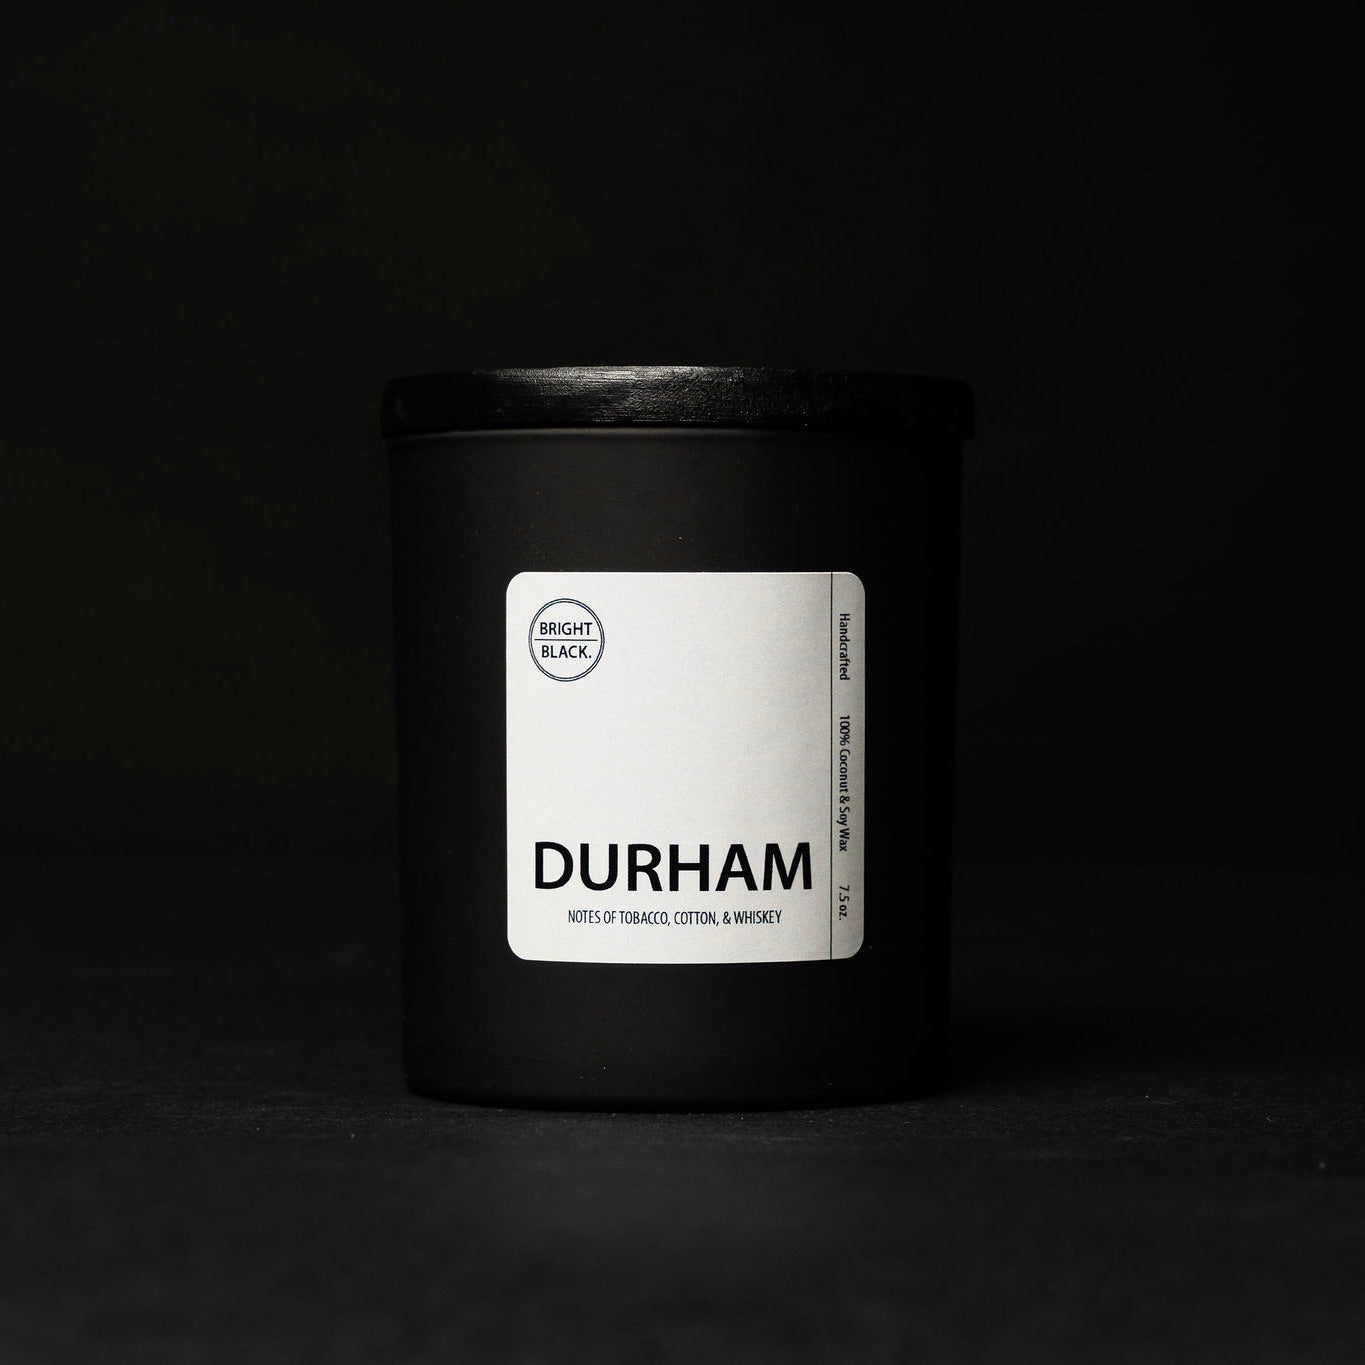 Durham – Bright Black